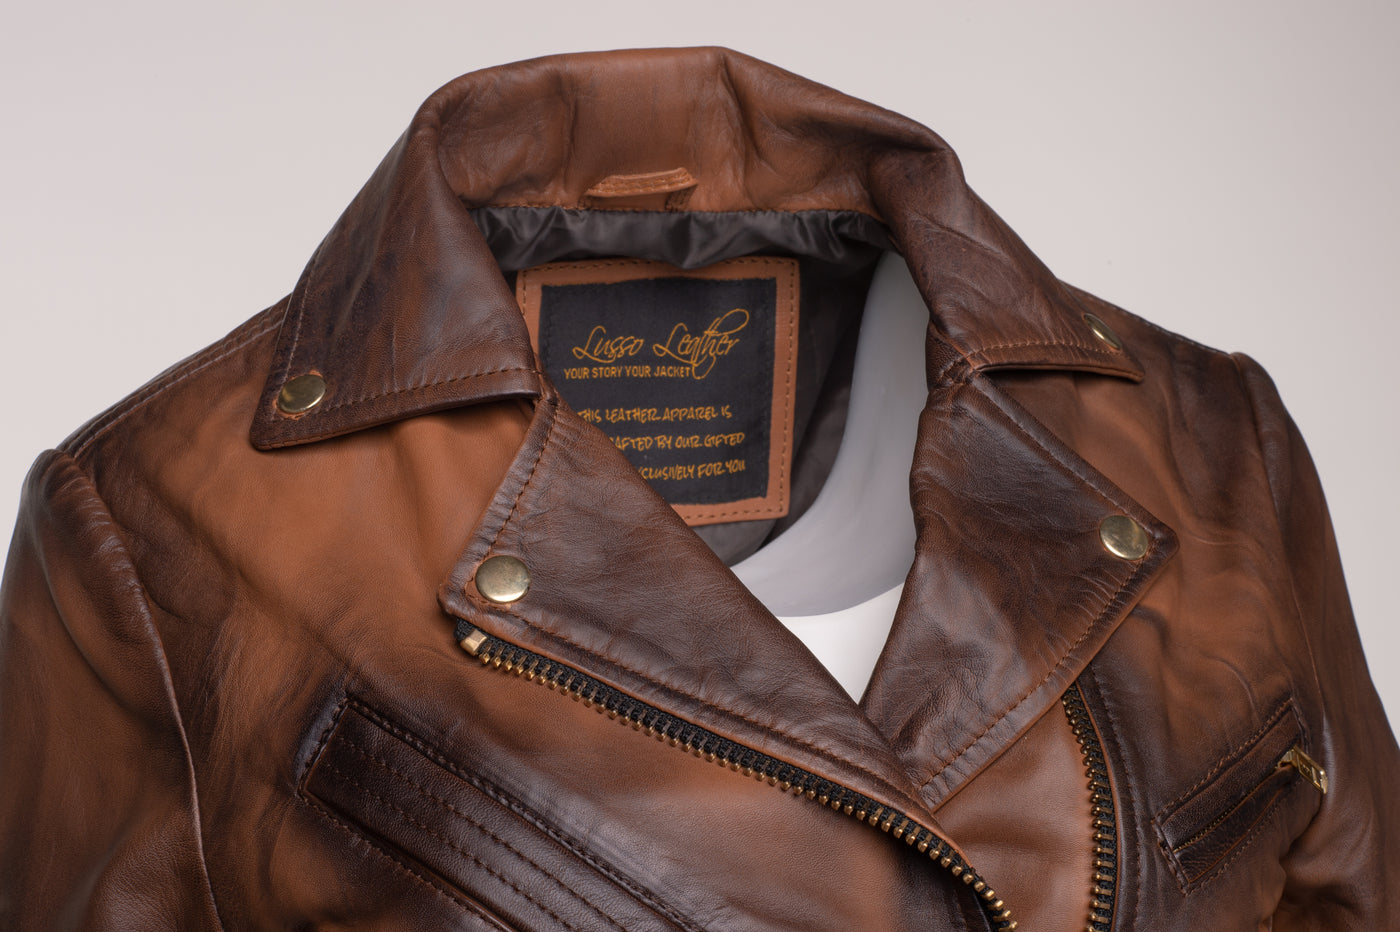 Crop Biker leather jacket with waist belt